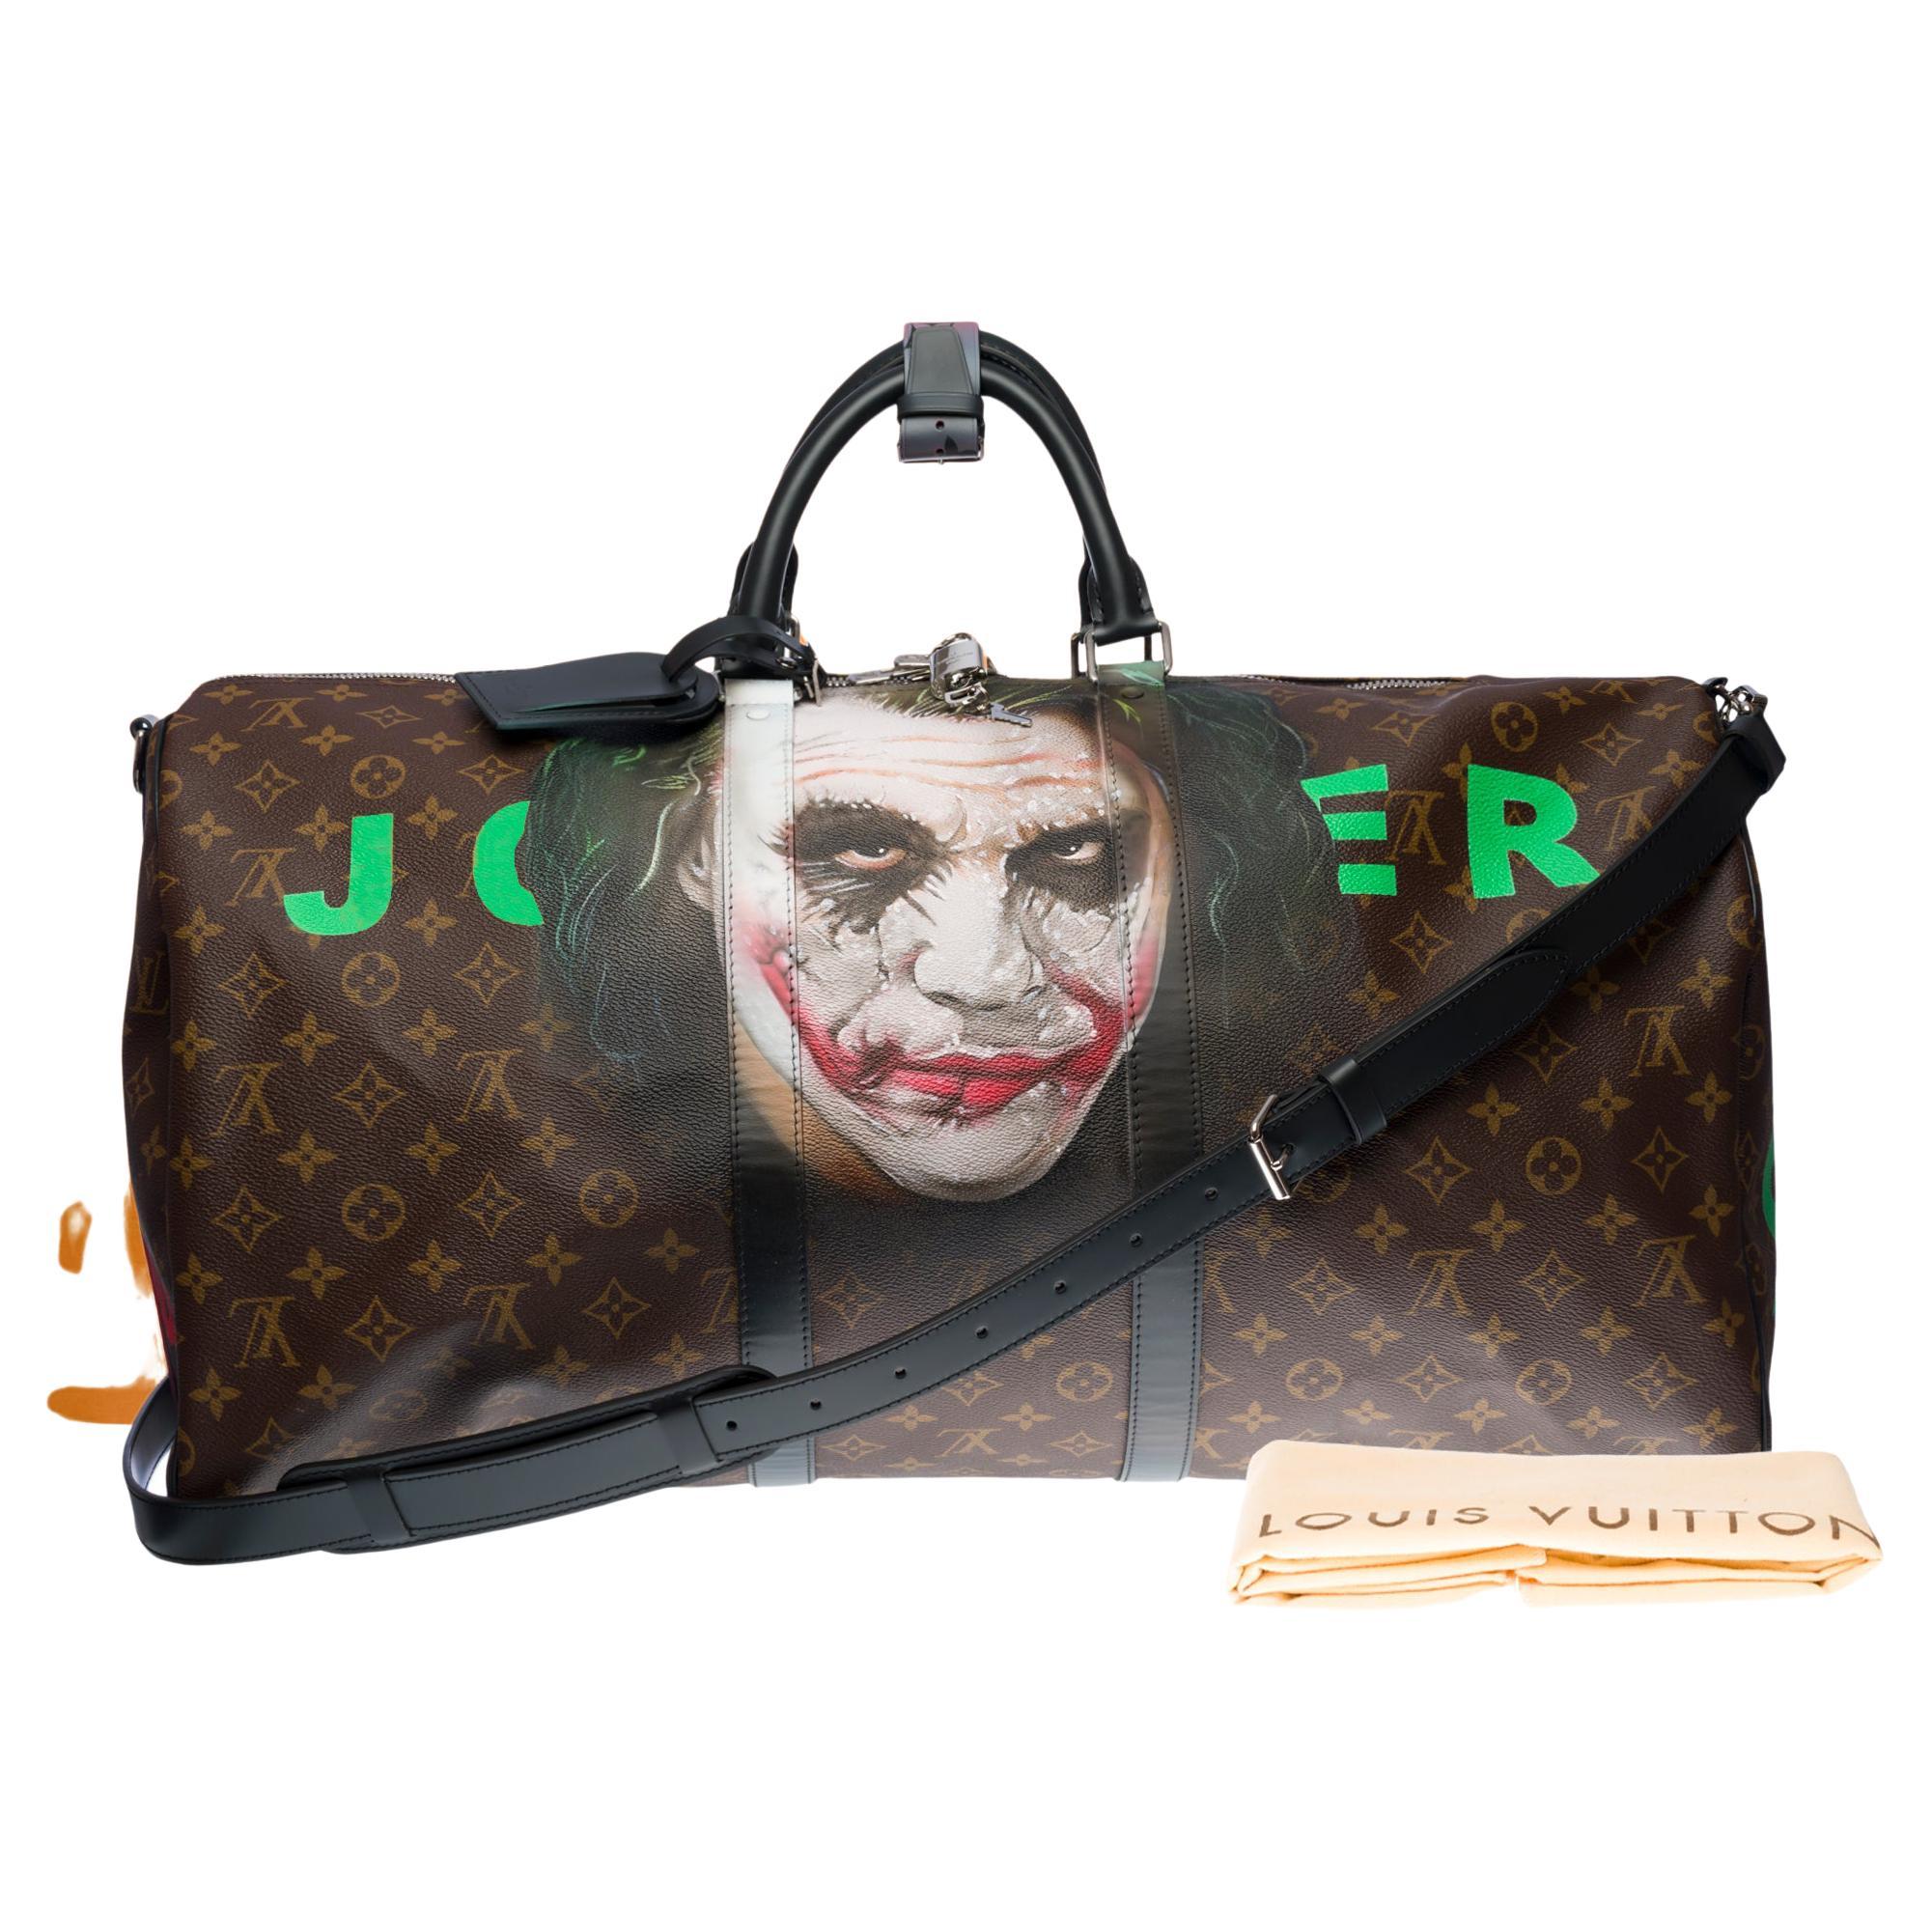 Joker Louis Vuitton - 7 For Sale on 1stDibs